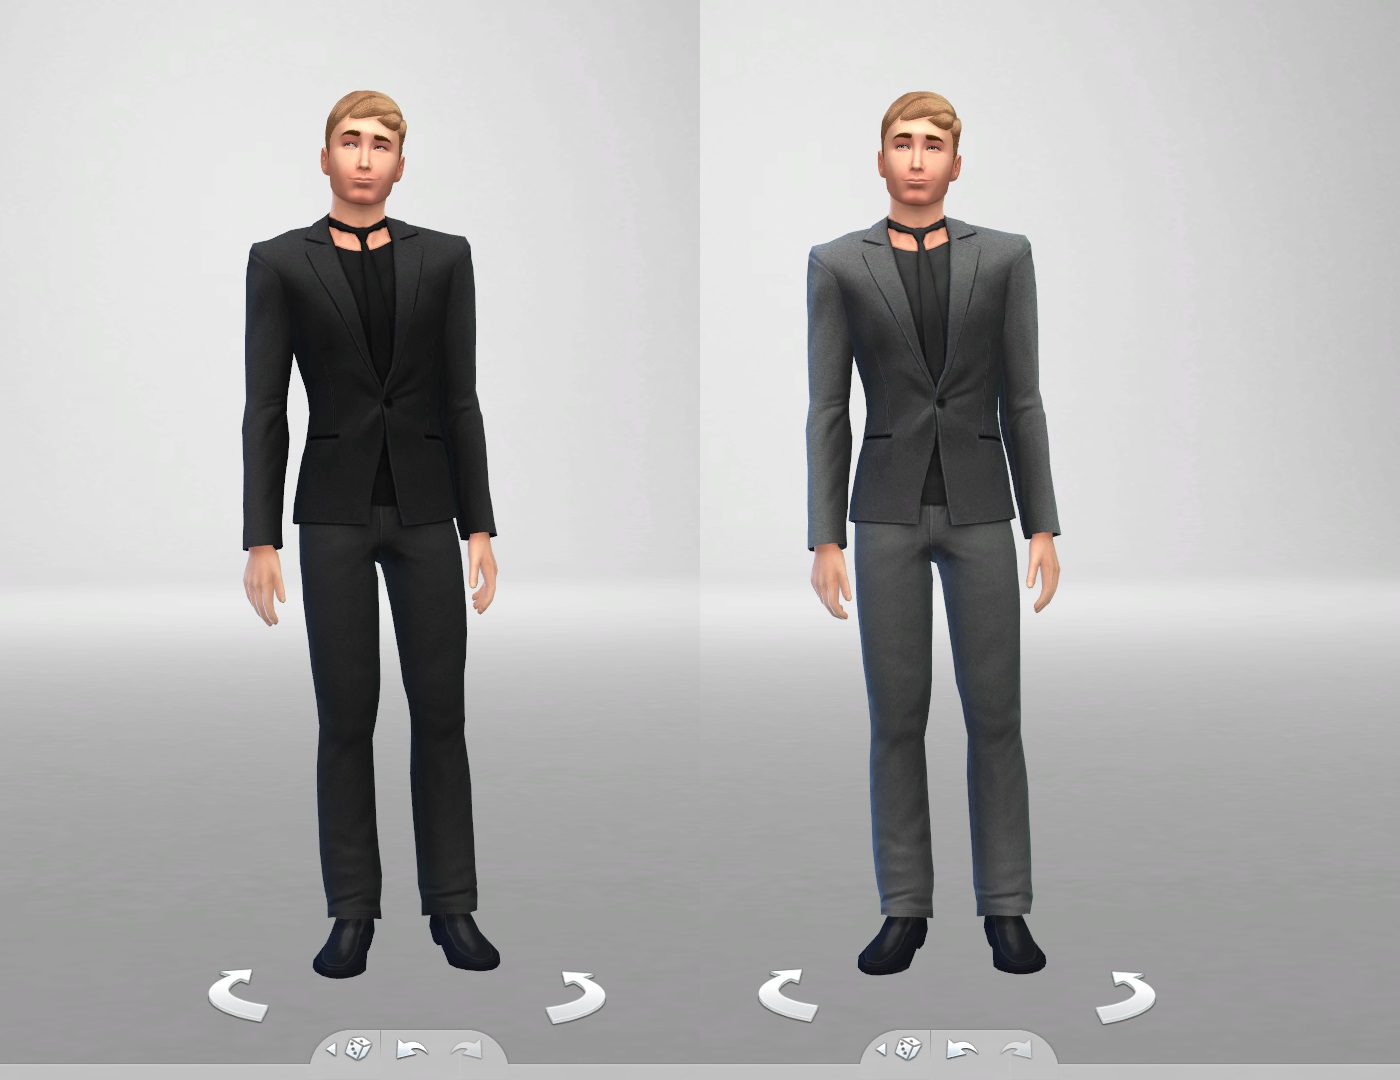 Мужчина 4 уровня. SIMS 4 Black Suit. SIMS 4 Suit Mini. Мужской костюм симс 4. Симс черный мужской костюм.